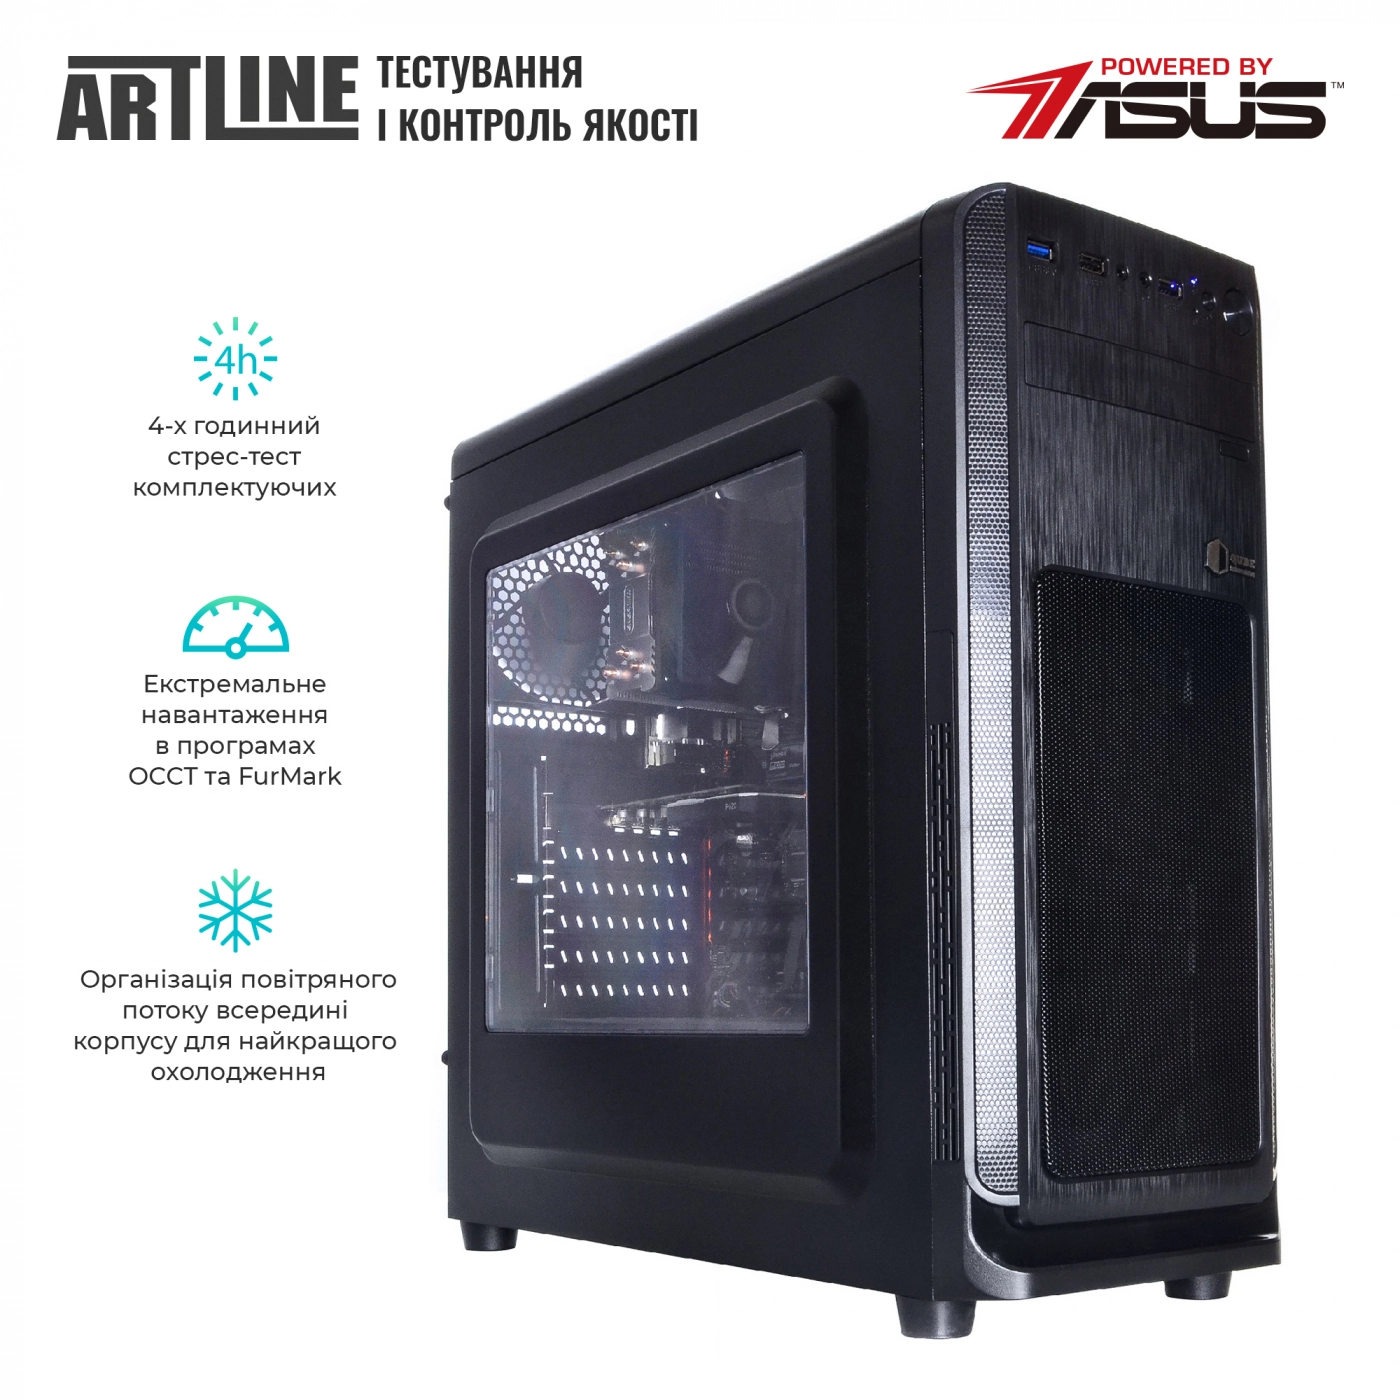 Купить Сервер ARTLINE Business T19v19 - фото 6